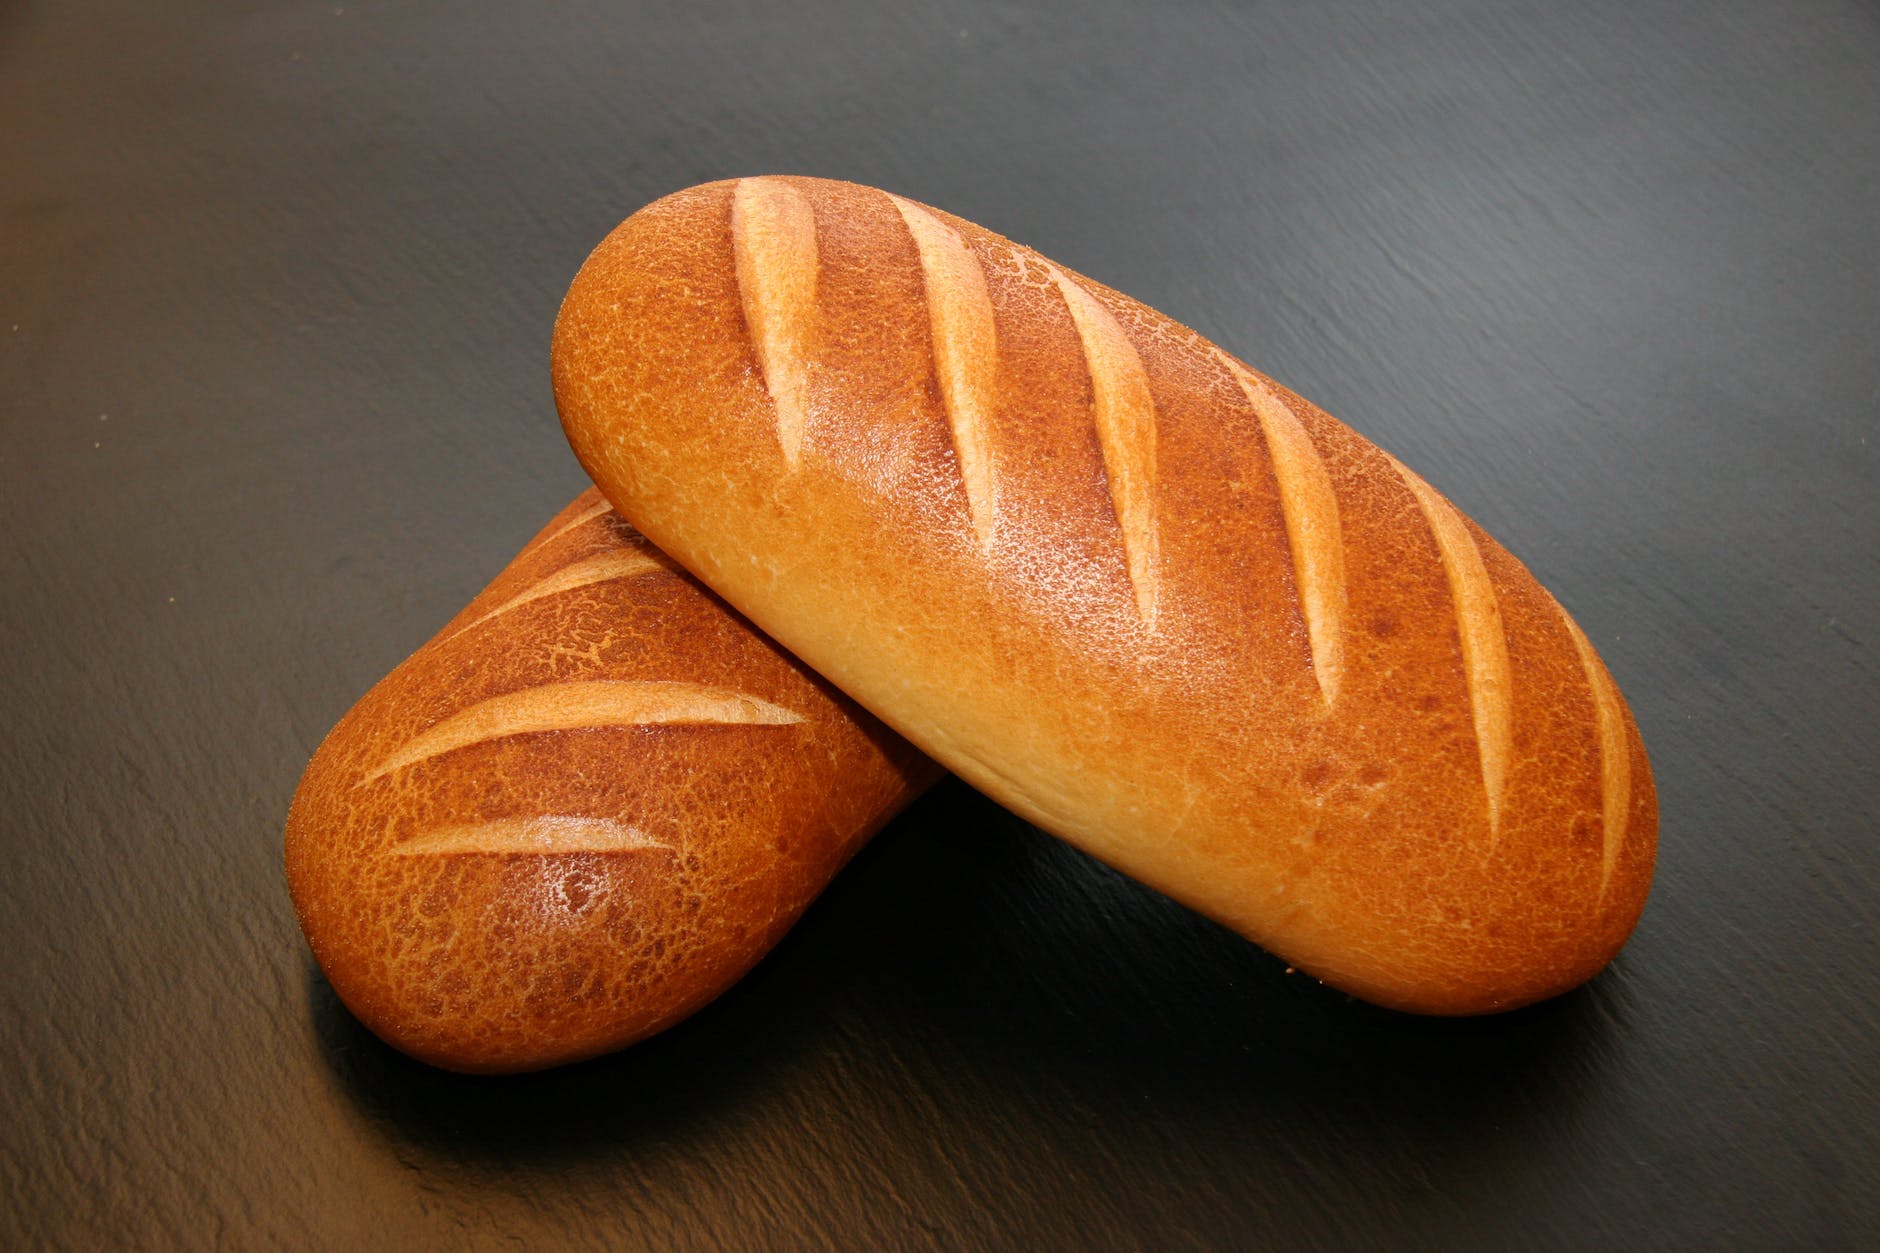 baked bread breakfast buns